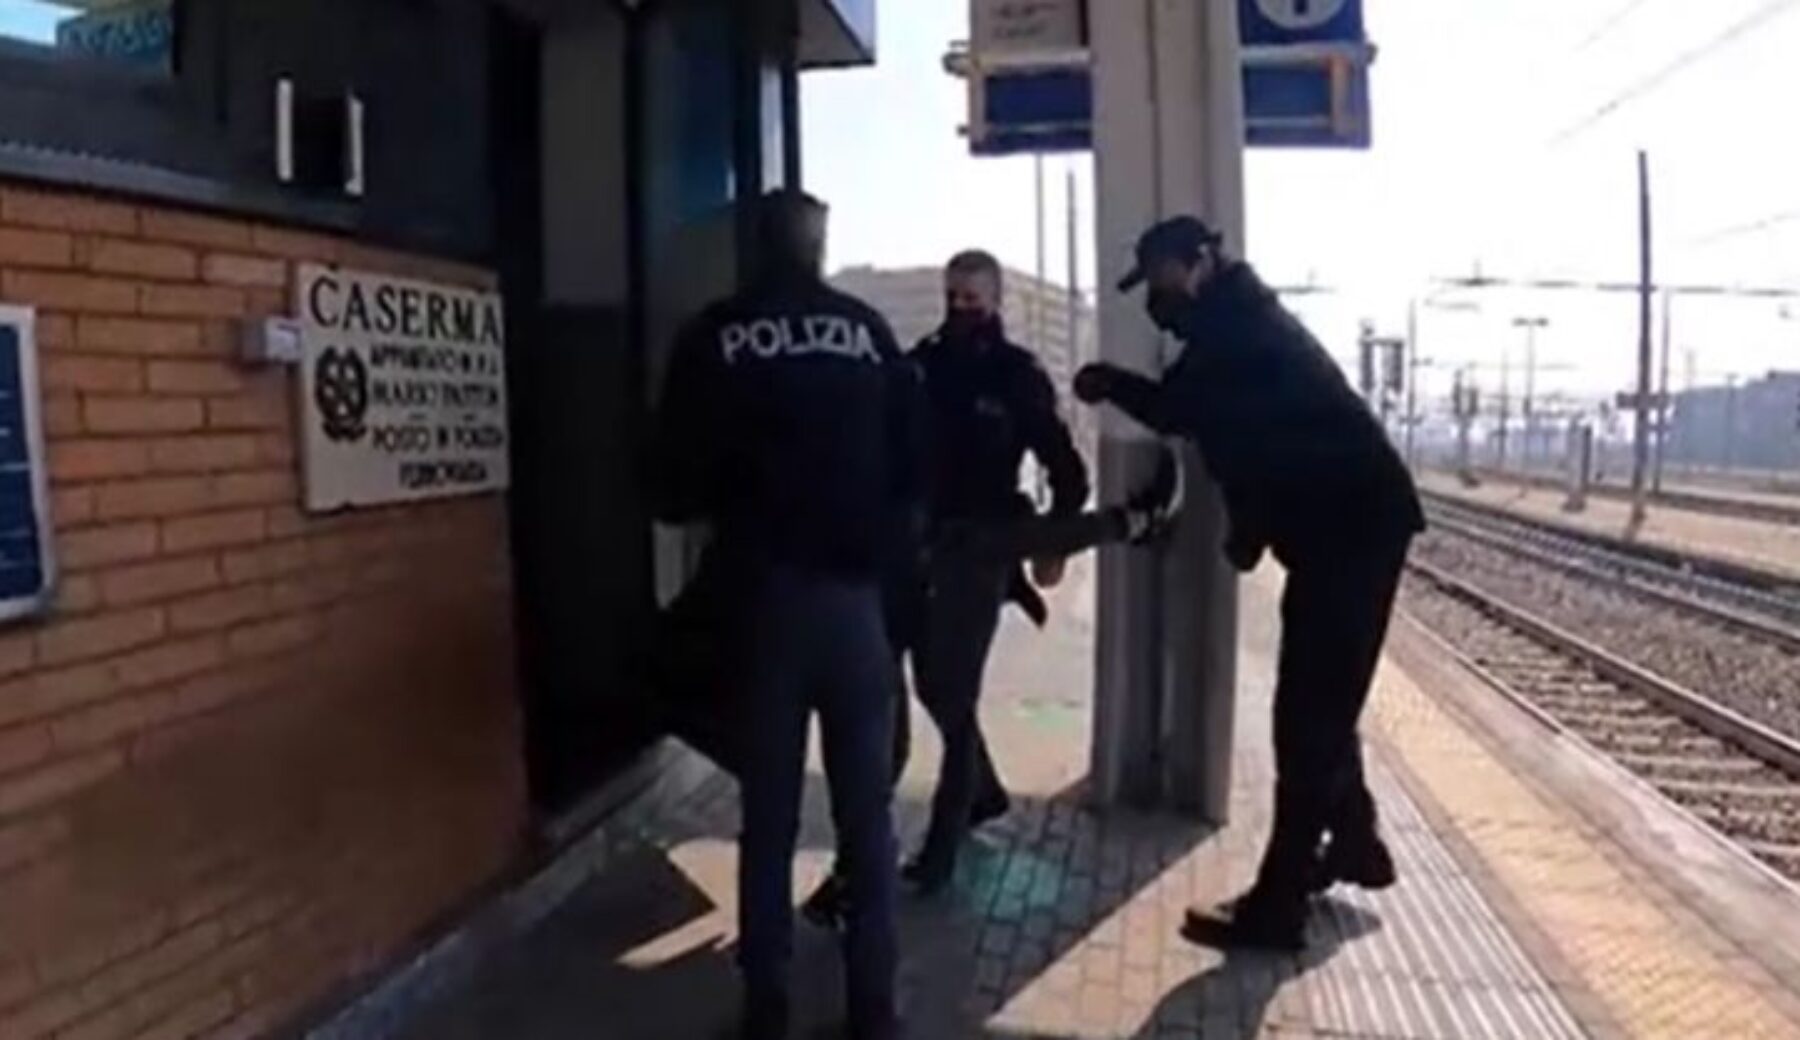 Borseggiatrici a Milano, la circolare della procura: “In carcere anche se incinte”